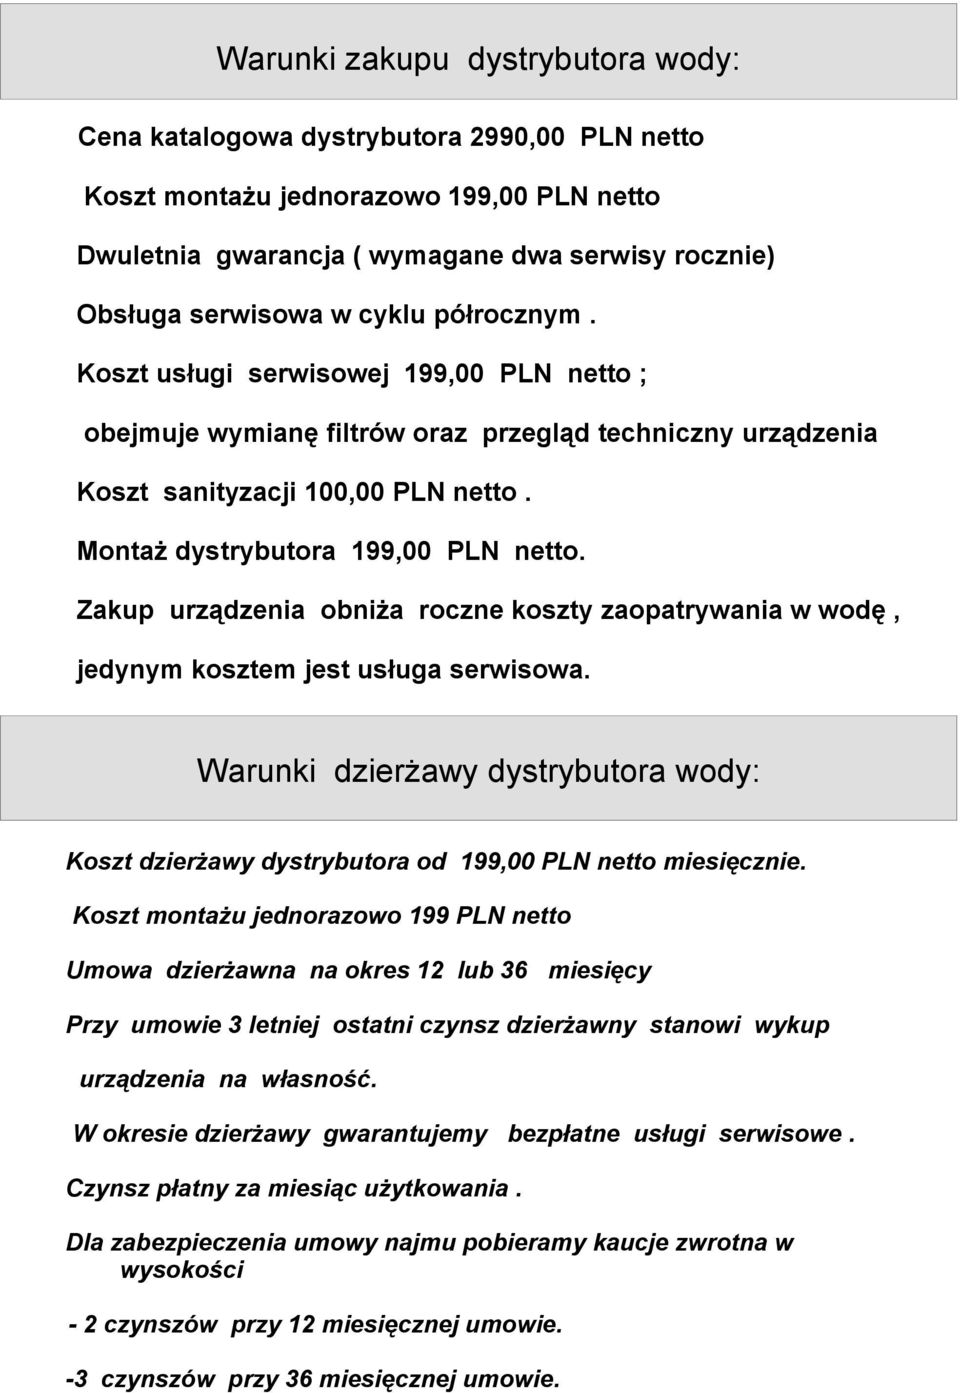 Zakup urządzenia obniża roczne koszty zaopatrywania w wodę, jedynym kosztem jest usługa serwisowa. Warunki dzierżawy dystrybutora wody: Koszt dzierżawy dystrybutora od 199,00 PLN netto miesięcznie.